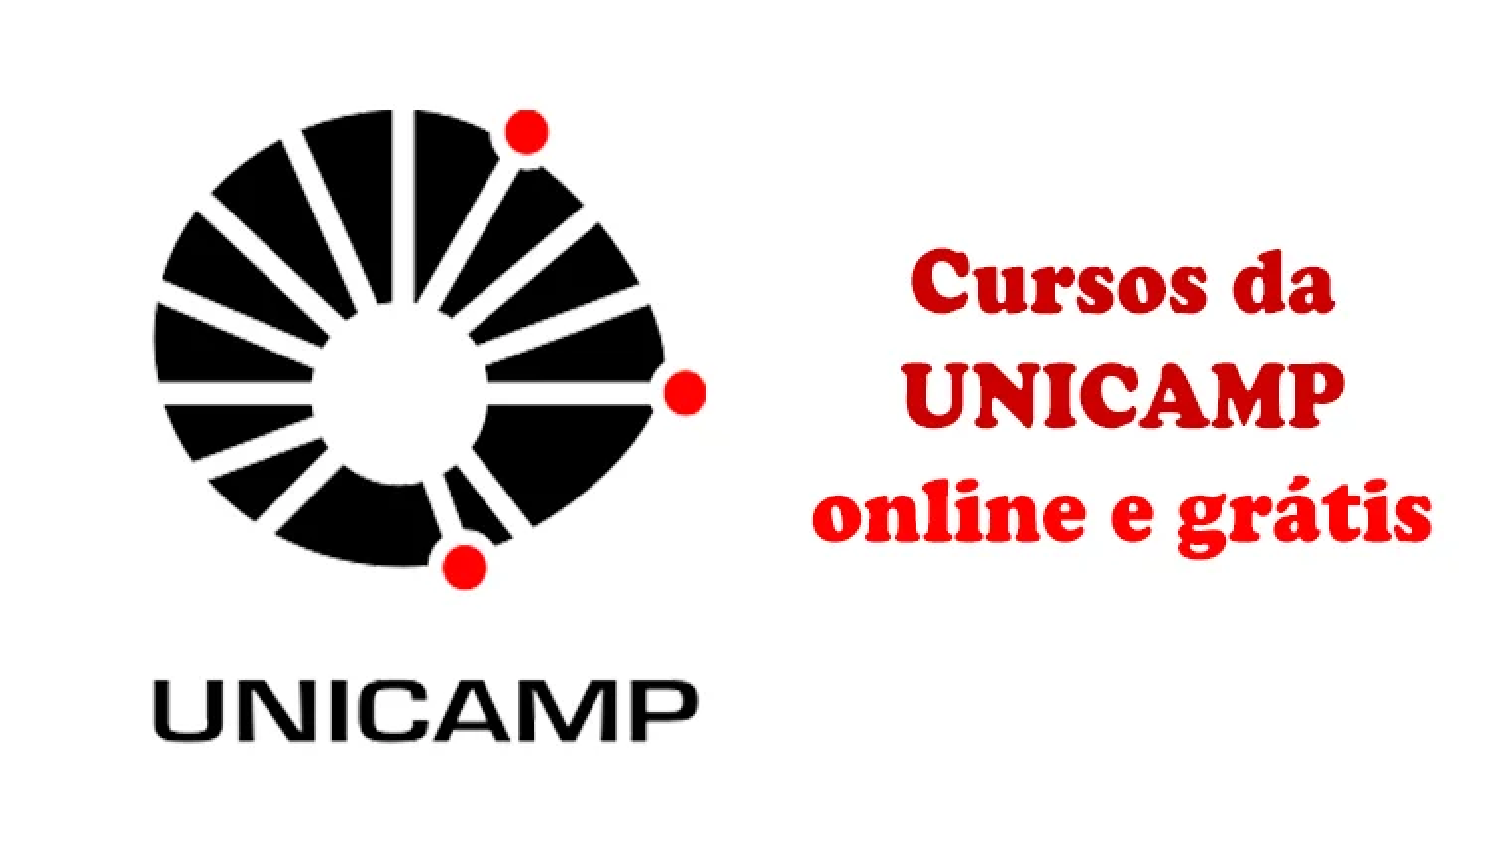 Unicamp, cursos gratuitos, cursos